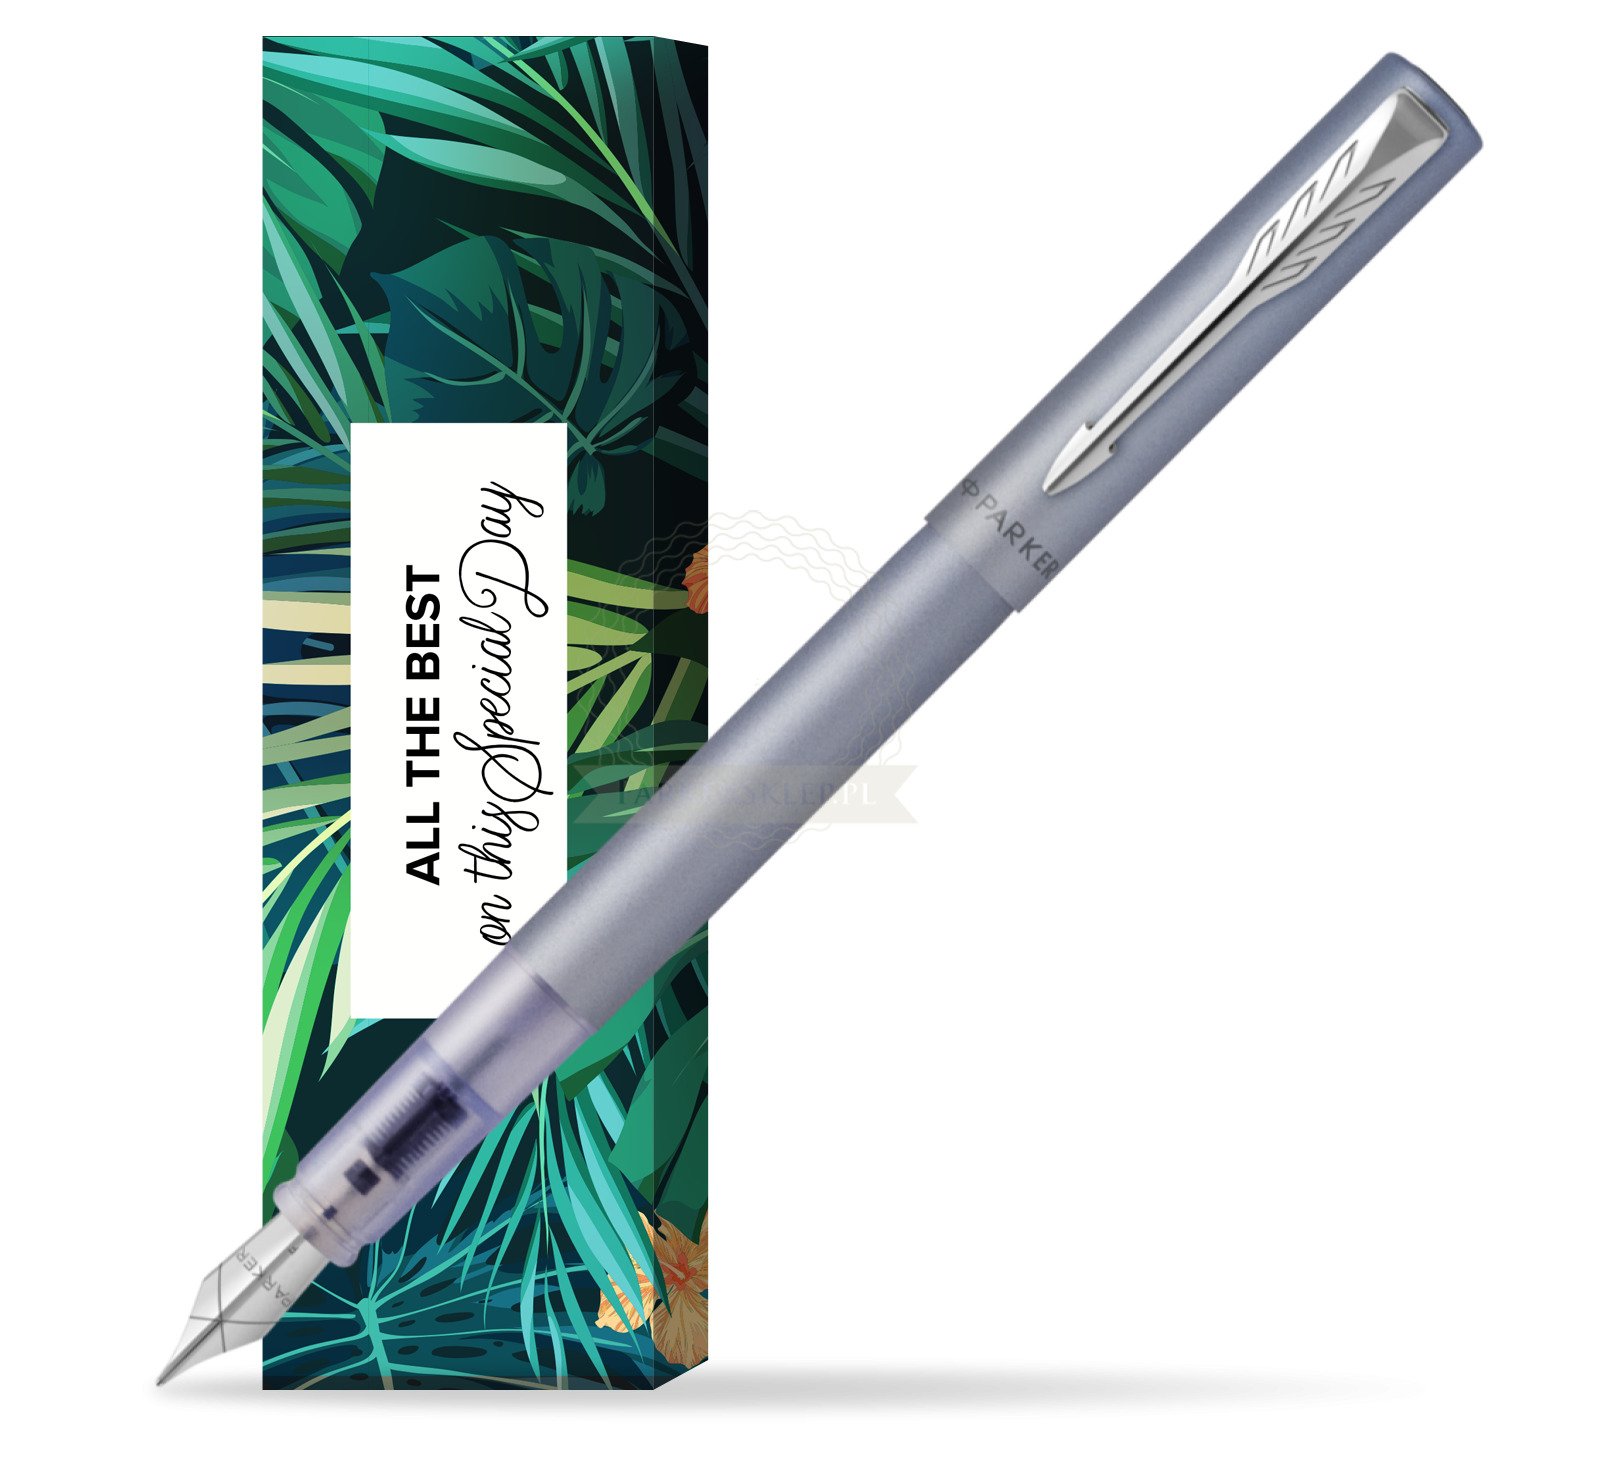 2159745:Parker stylo plume Vector XL, moyenne, en boîte-cadeau, Silver blue  (argent/bleu)